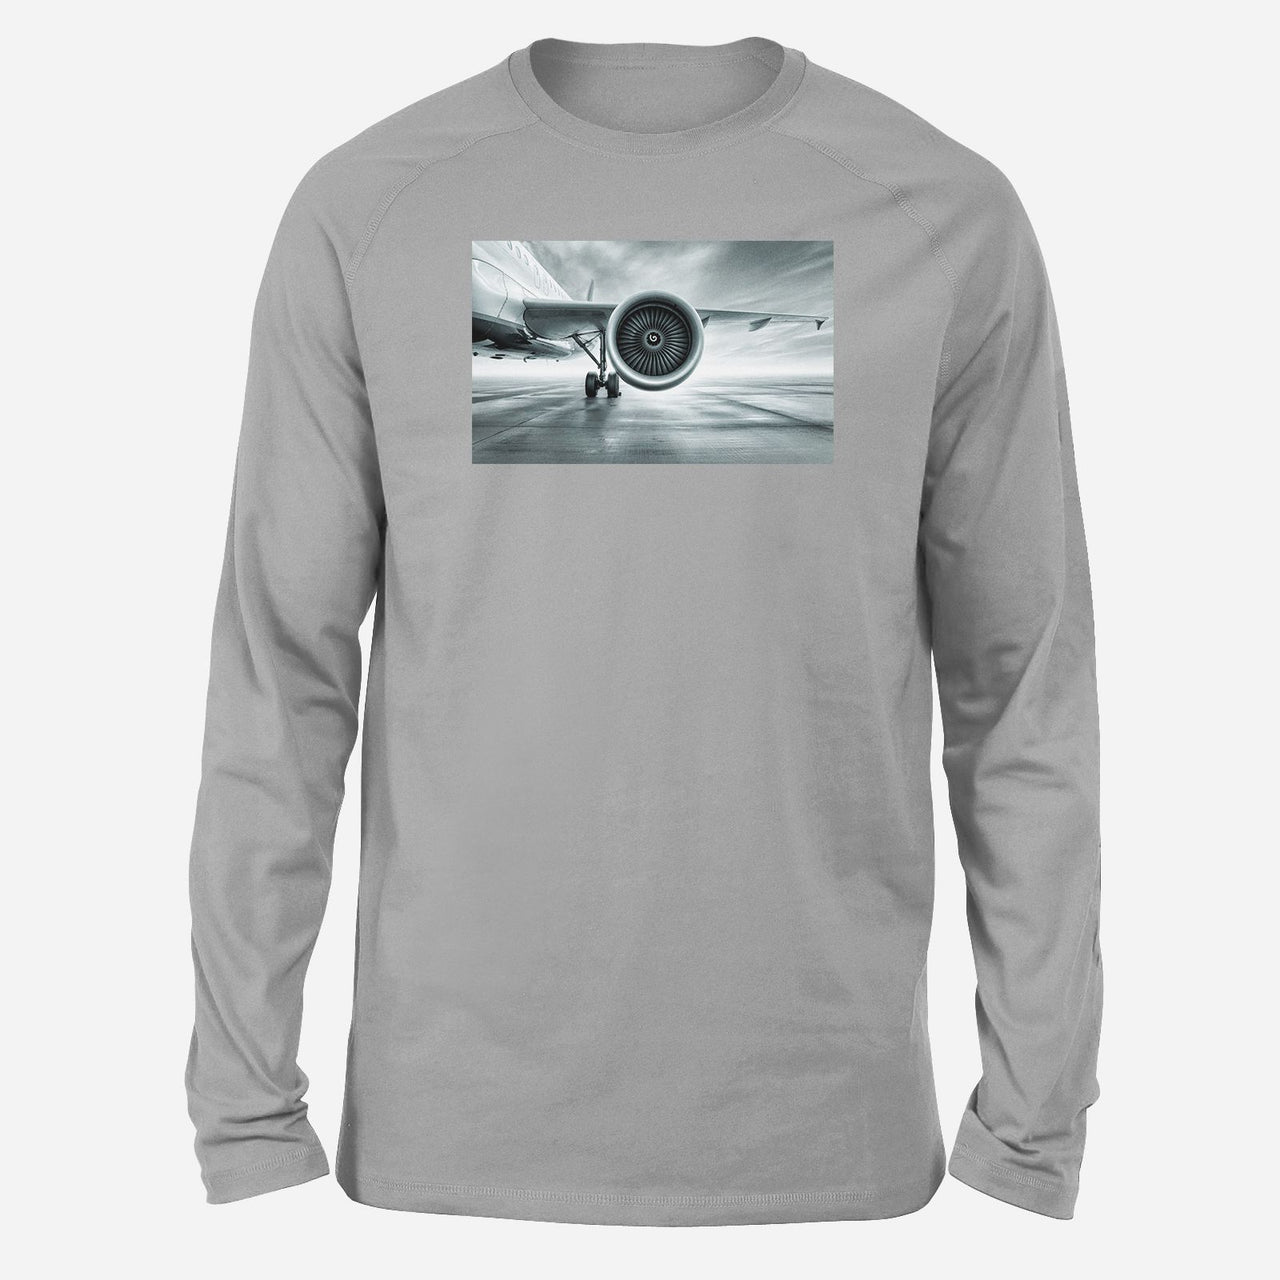 Super Cool Airliner Jet Engine Designed Long-Sleeve T-Shirts